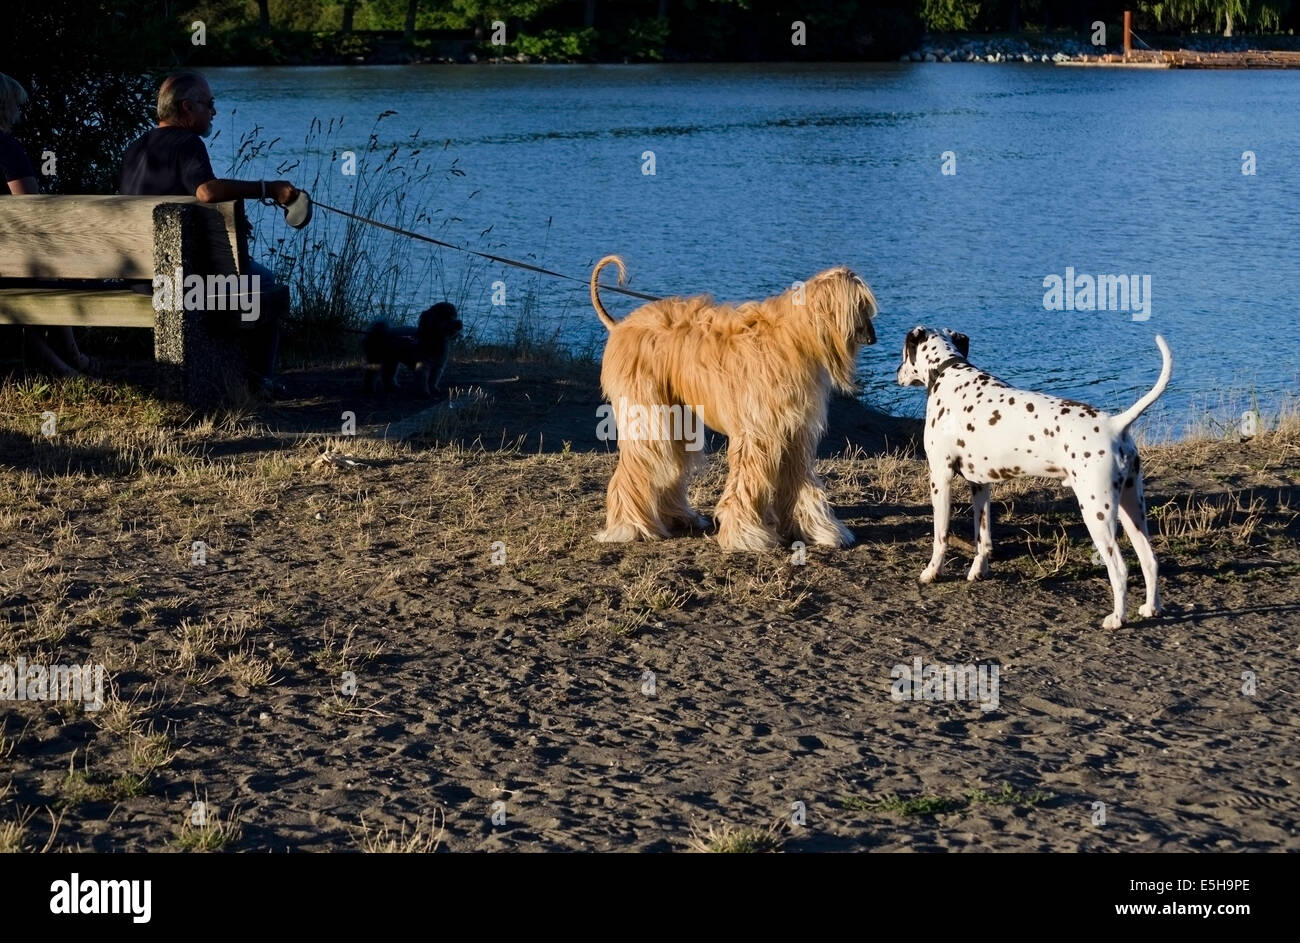 Hound afgano saluda perro dálmata en estacionamiento por un río. Perros socializar. Foto de stock